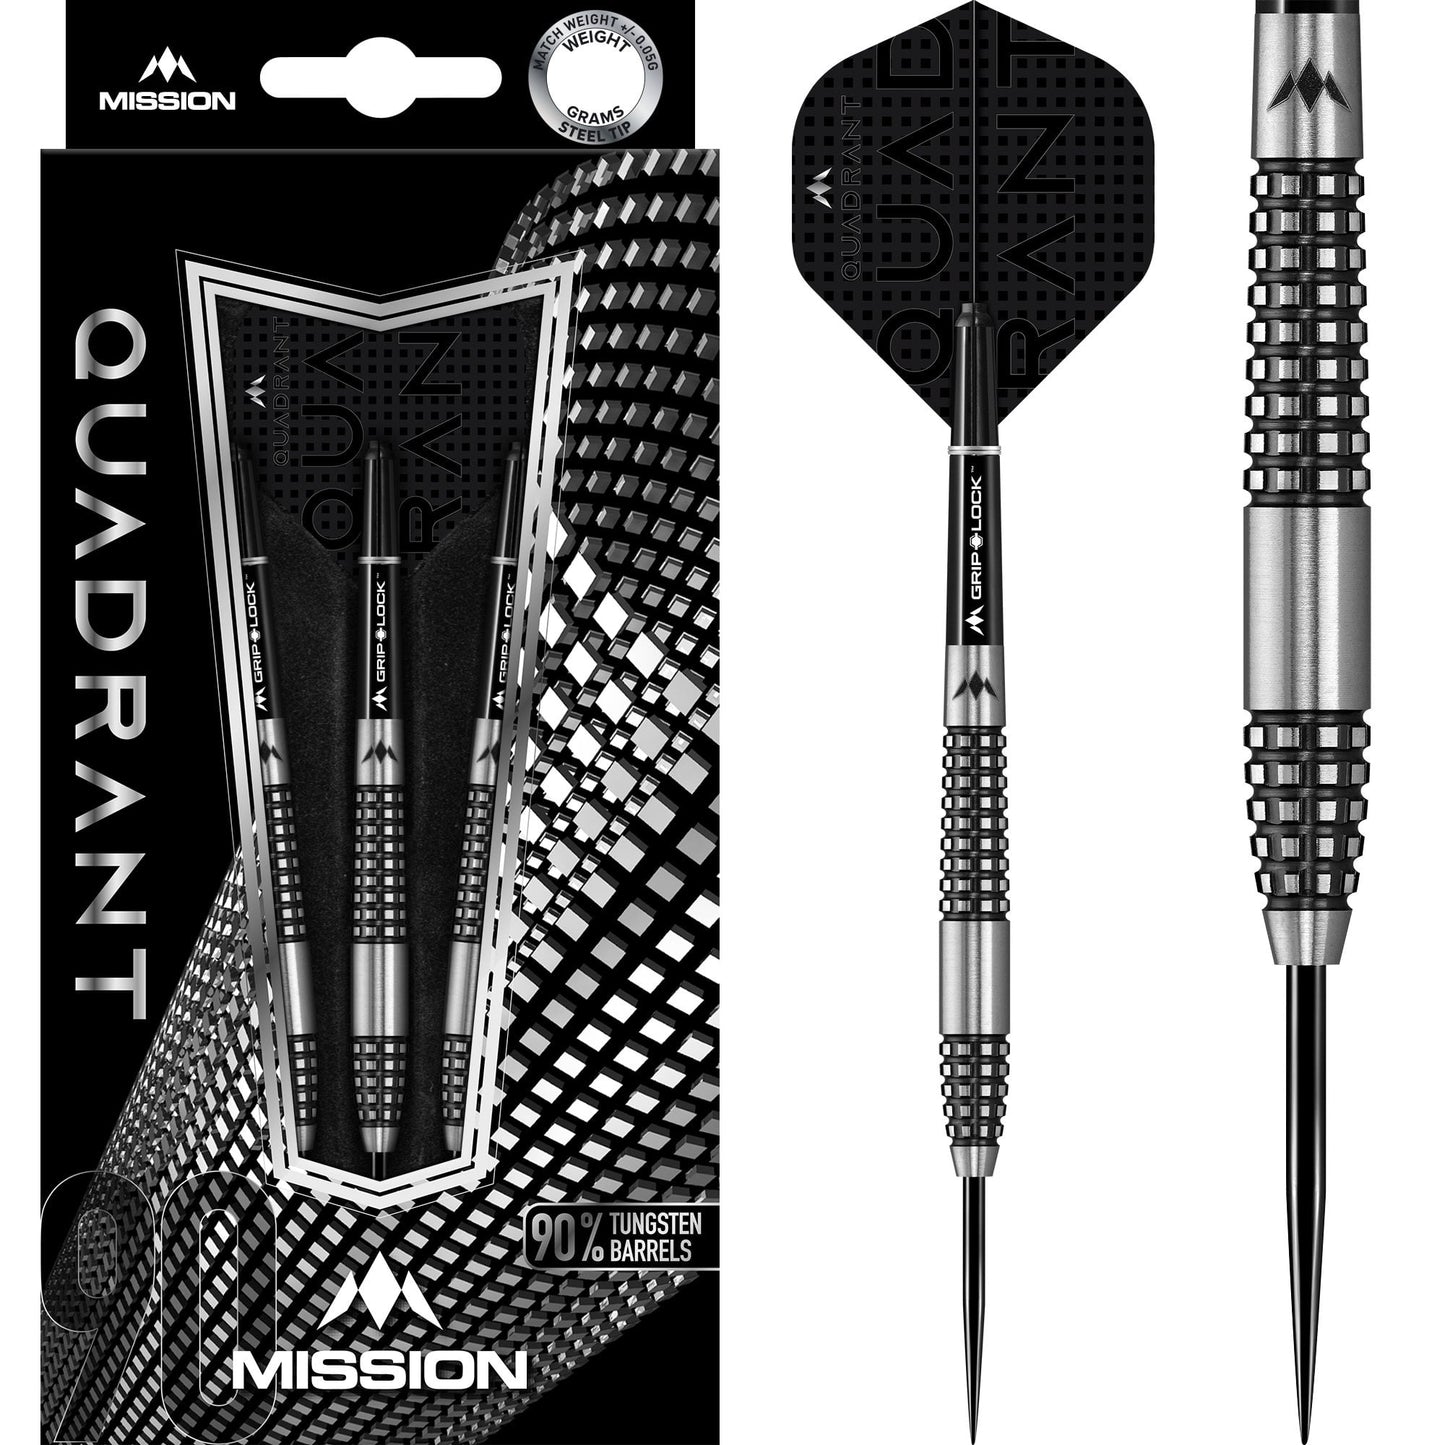 Mission Quadrant Darts - Steel Tip - M2 - Quad Grip